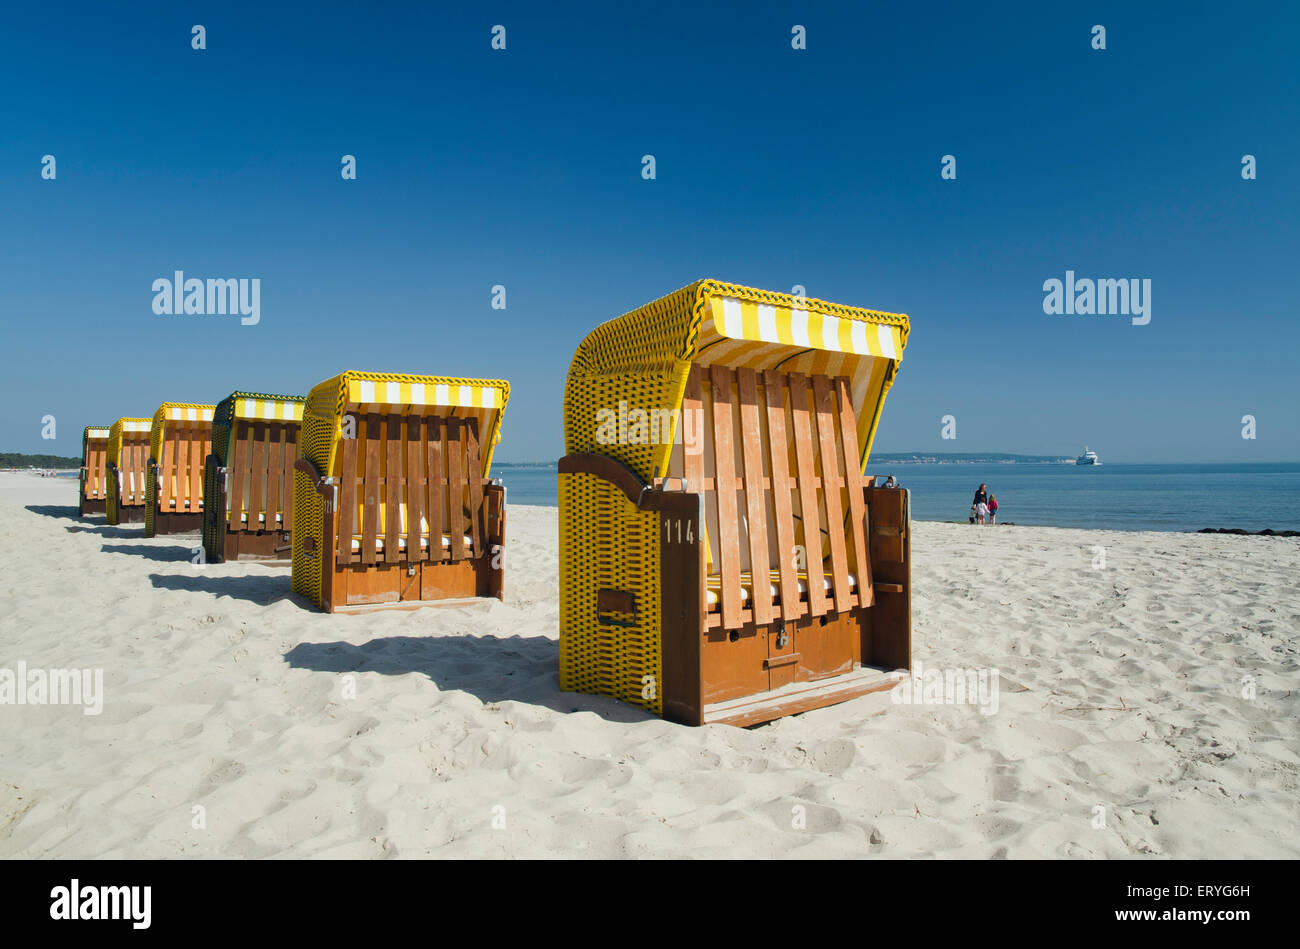 Beach chairs on the sandy beach, Binz, Rügen, Mecklenburg-Western Pomerania, Germany Stock Photo